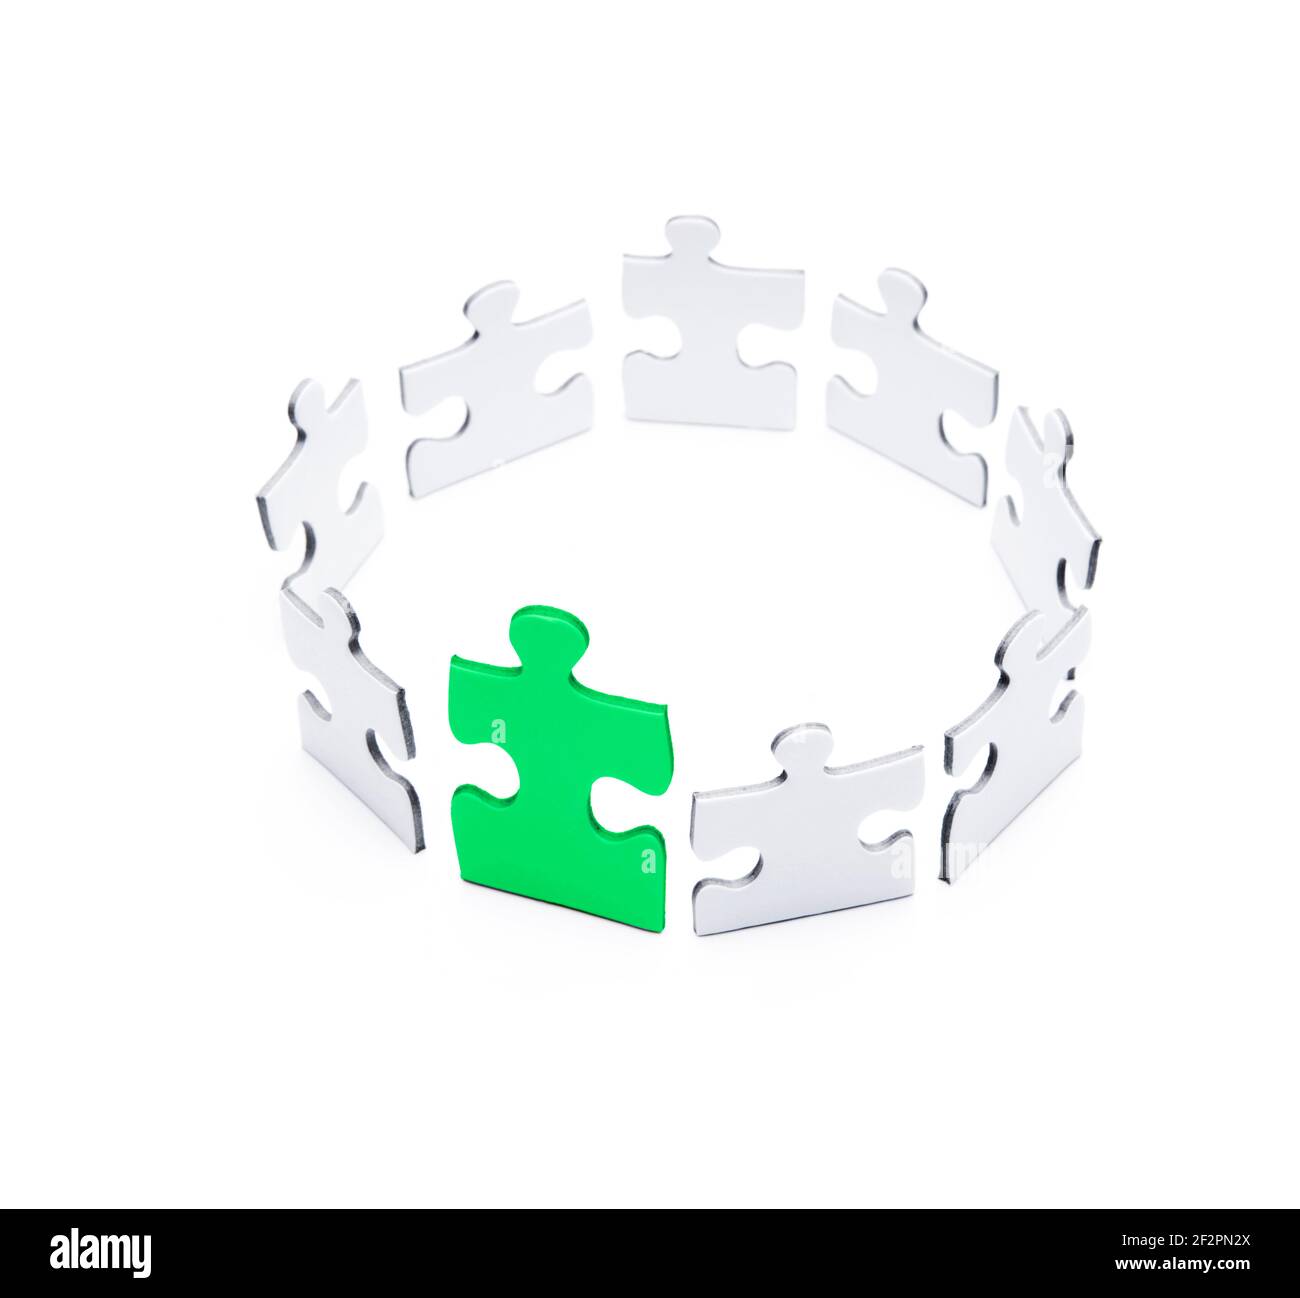 Puzzleteile in einem Kreis angeordnet Stockfoto